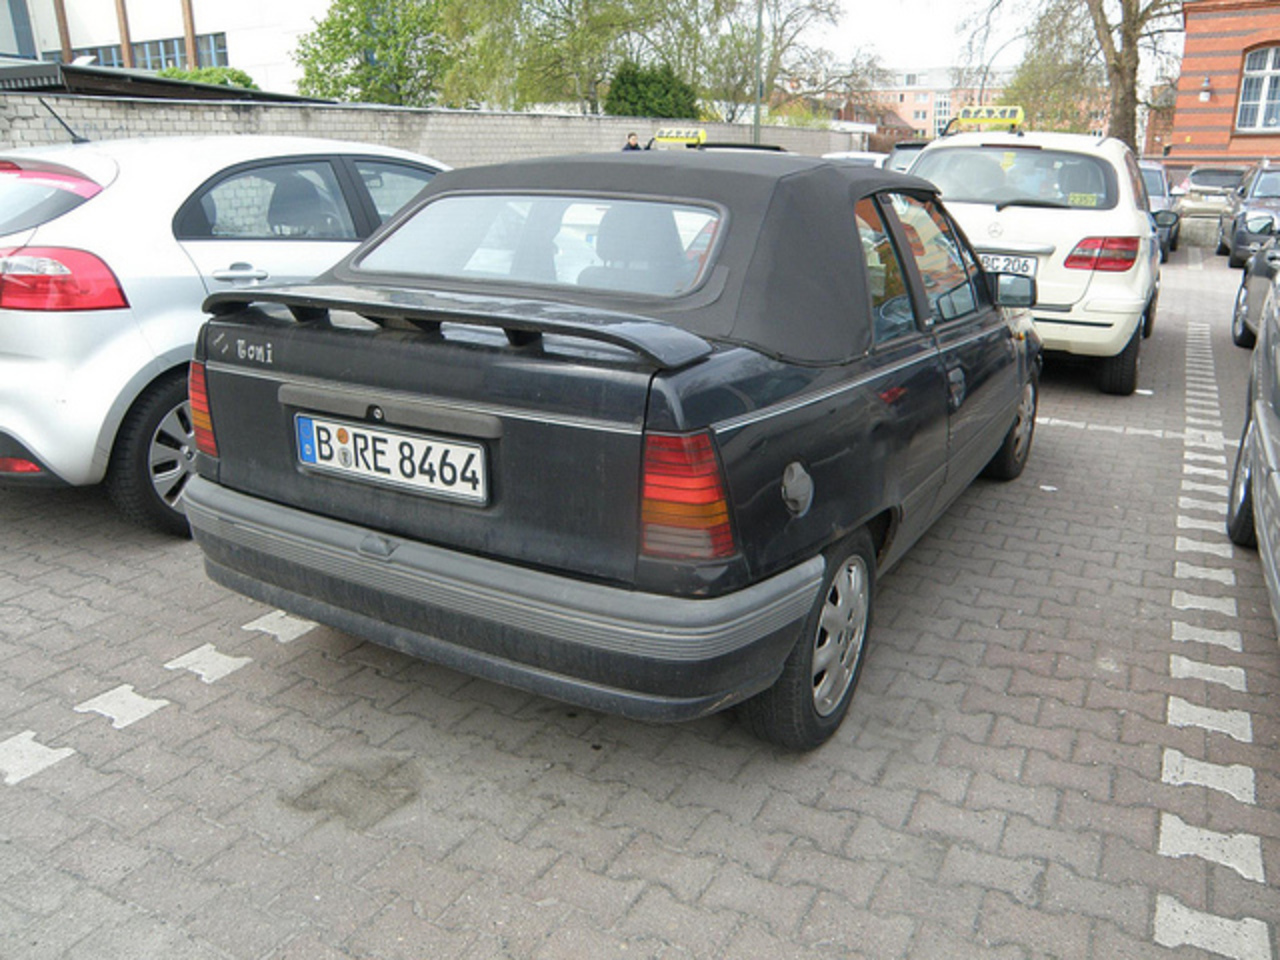 1989 Opel Kadett Cabriolet [E] | Flickr - Photo Sharing!